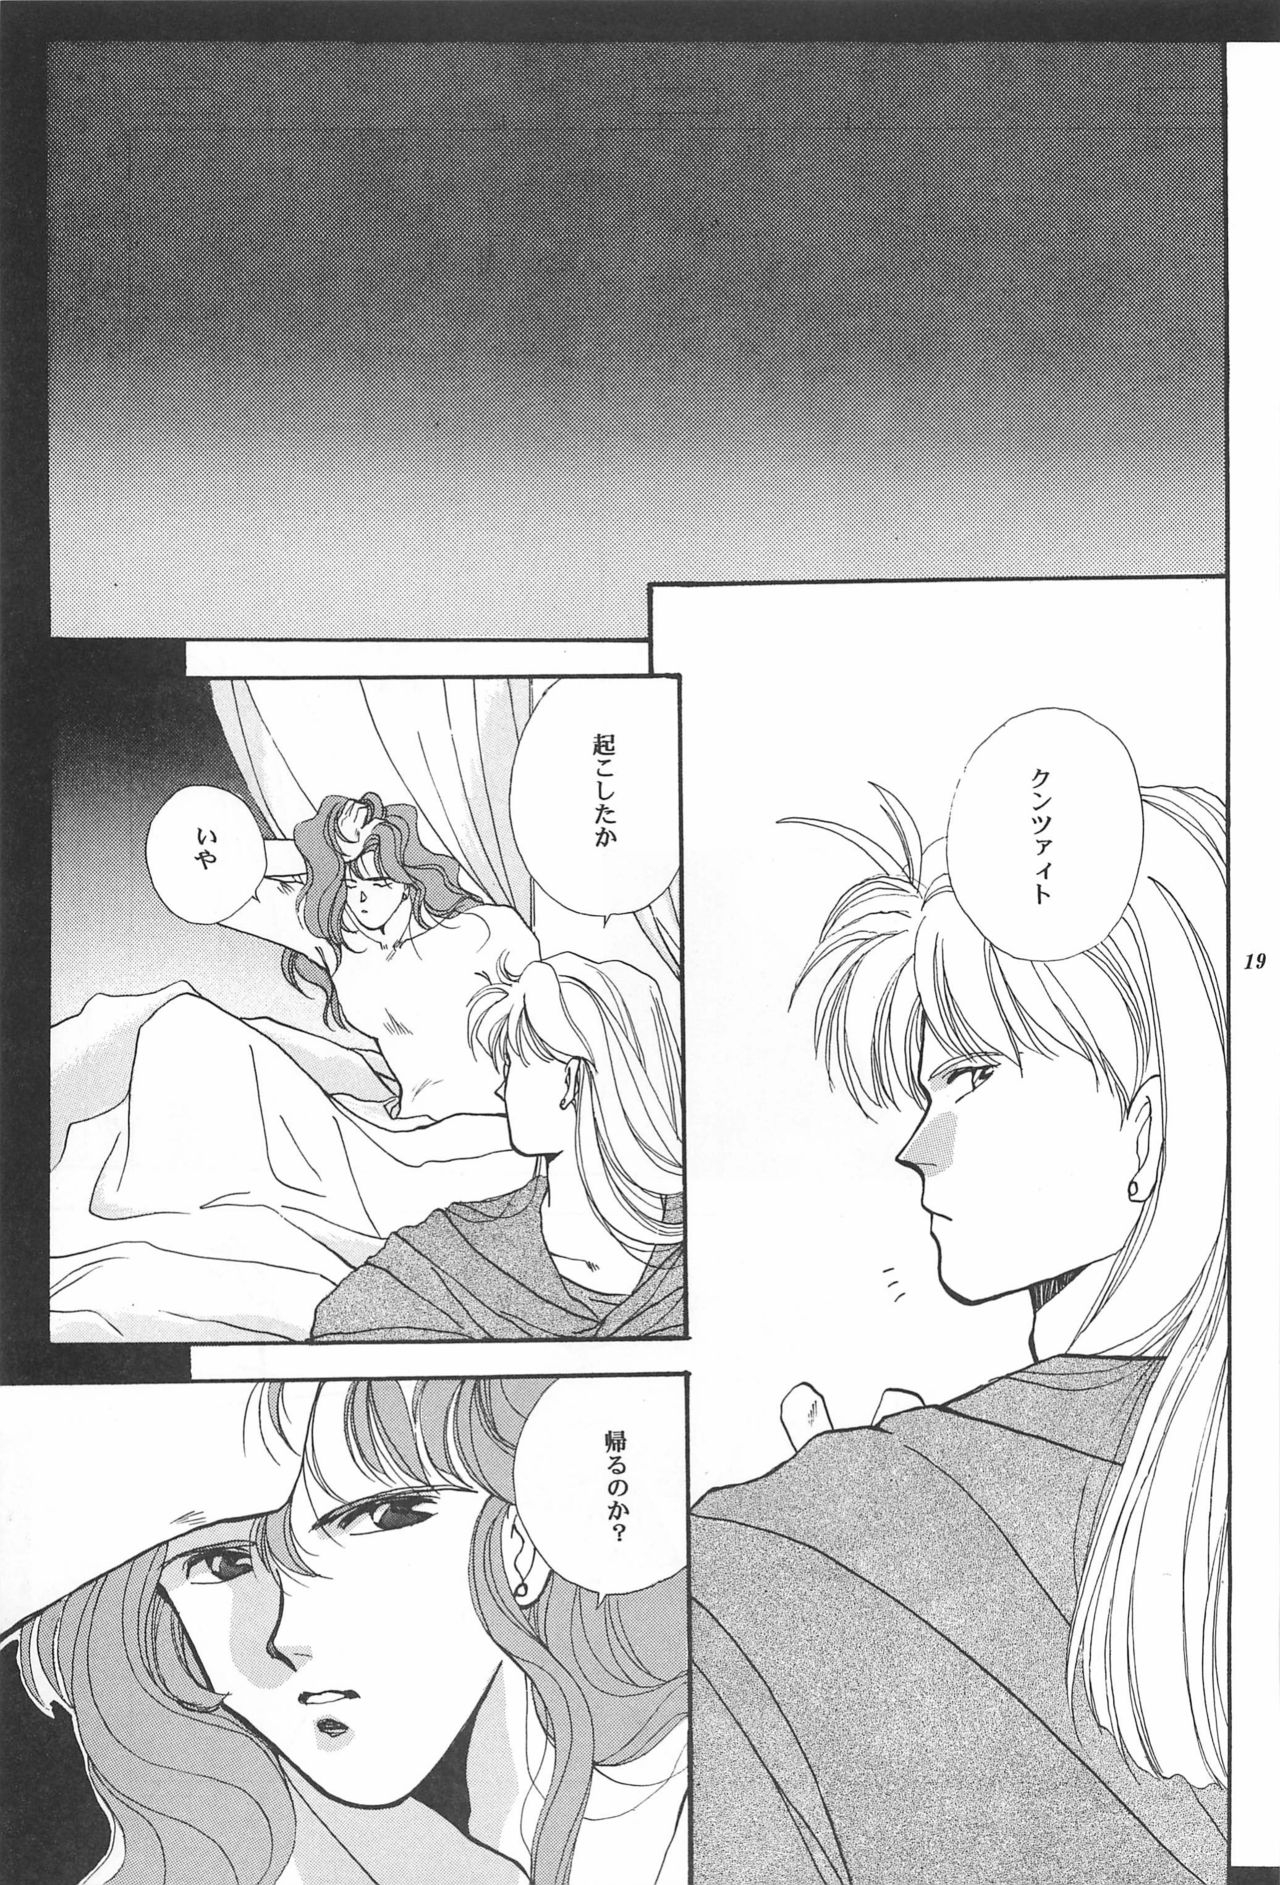 [Hello World (Muttri Moony)] Kaze no You ni Yume no You ni - Sailor Moon Collection (Sailor Moon) 18